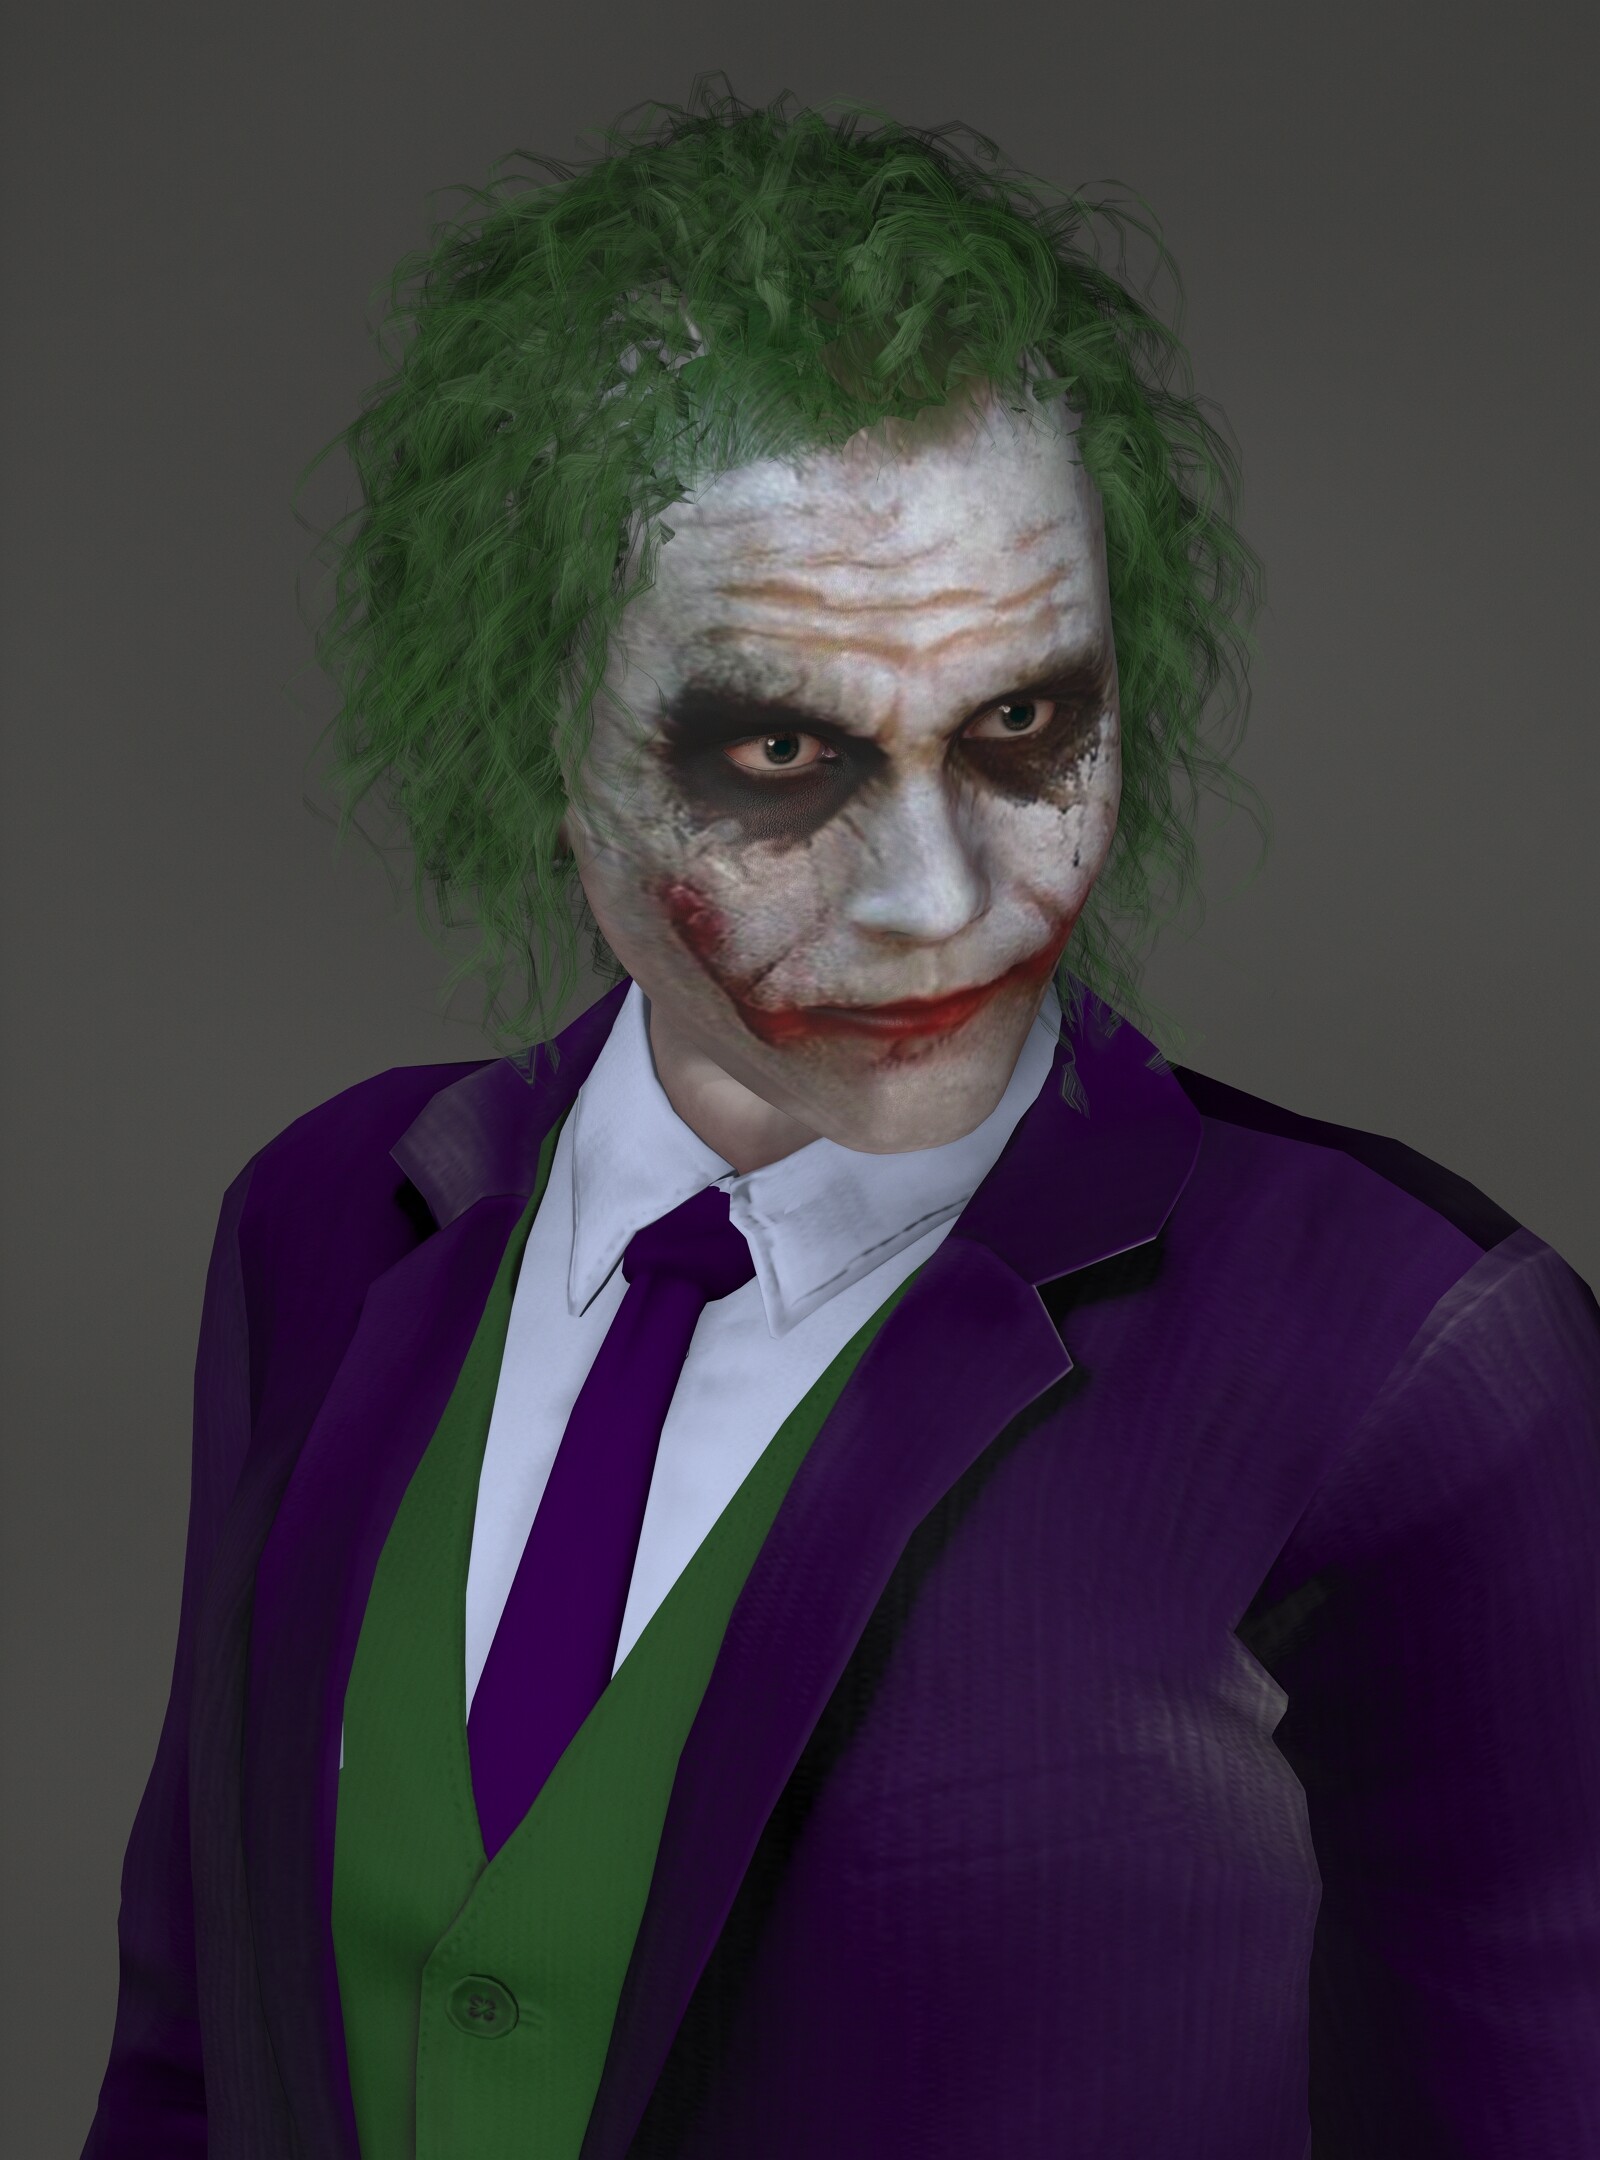 ArtStation - The Joker (Heath Ledger) 3D model